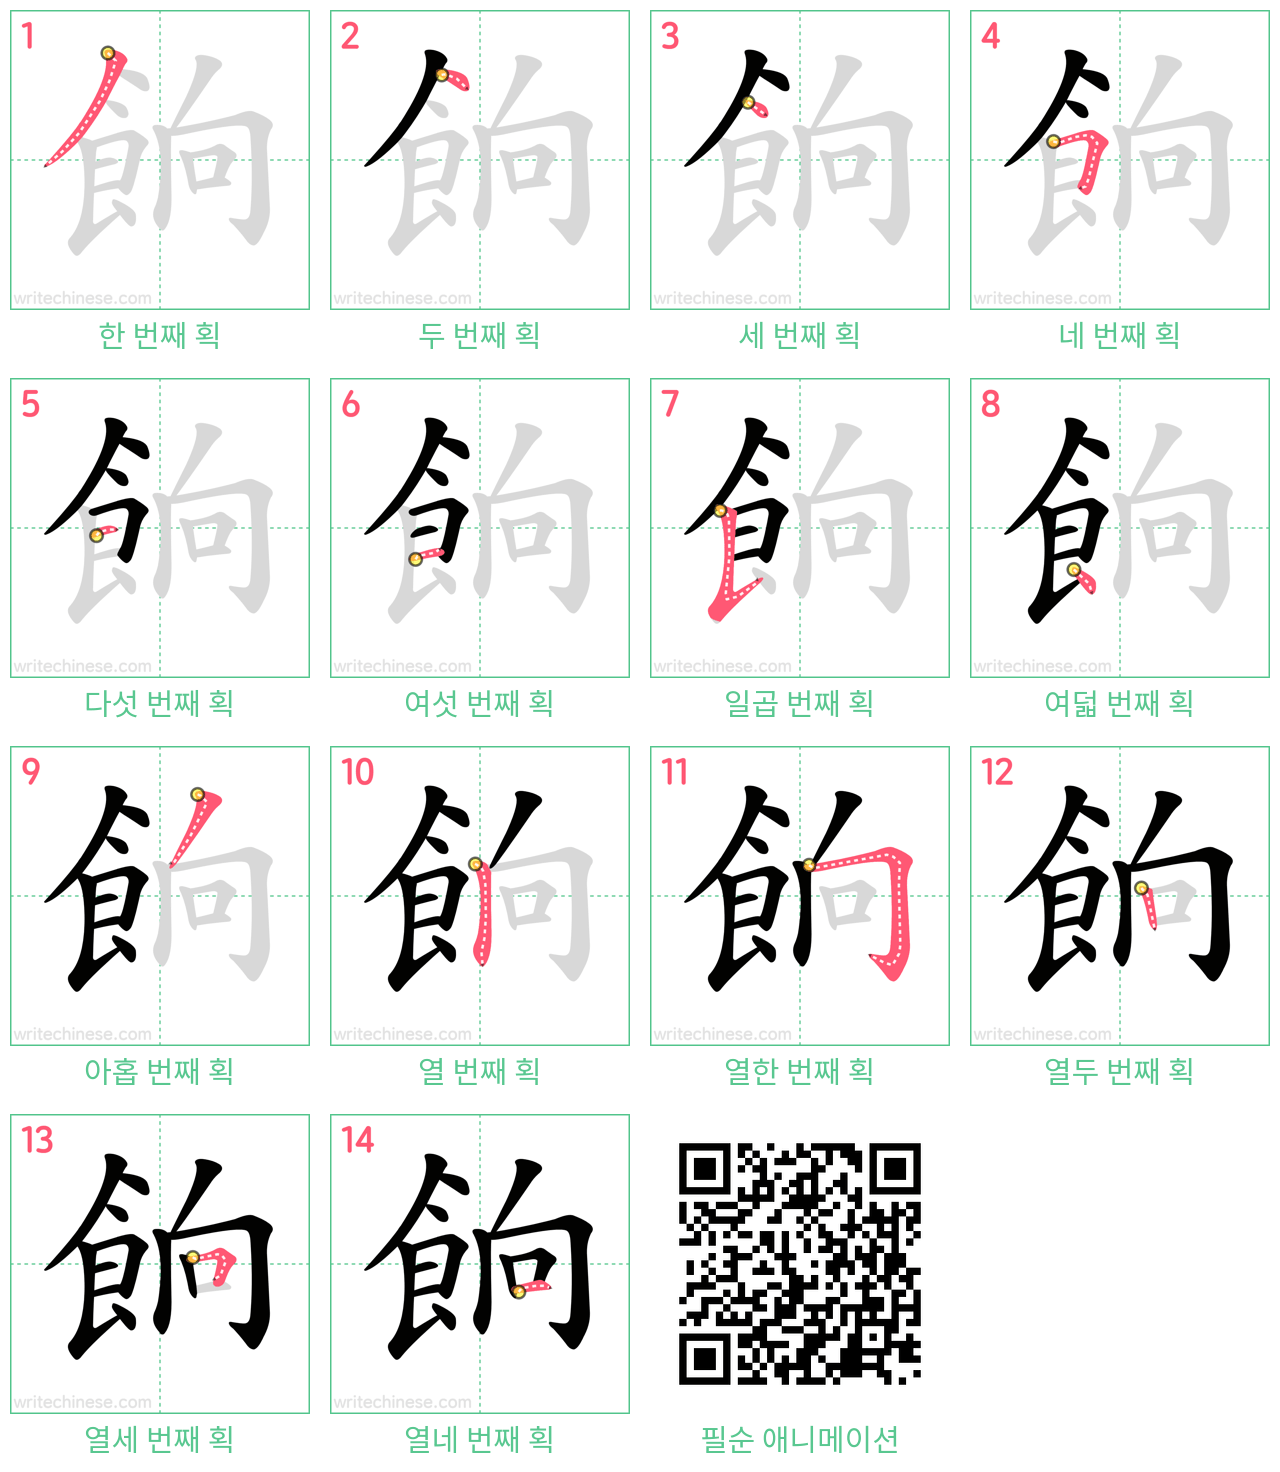 餉 step-by-step stroke order diagrams